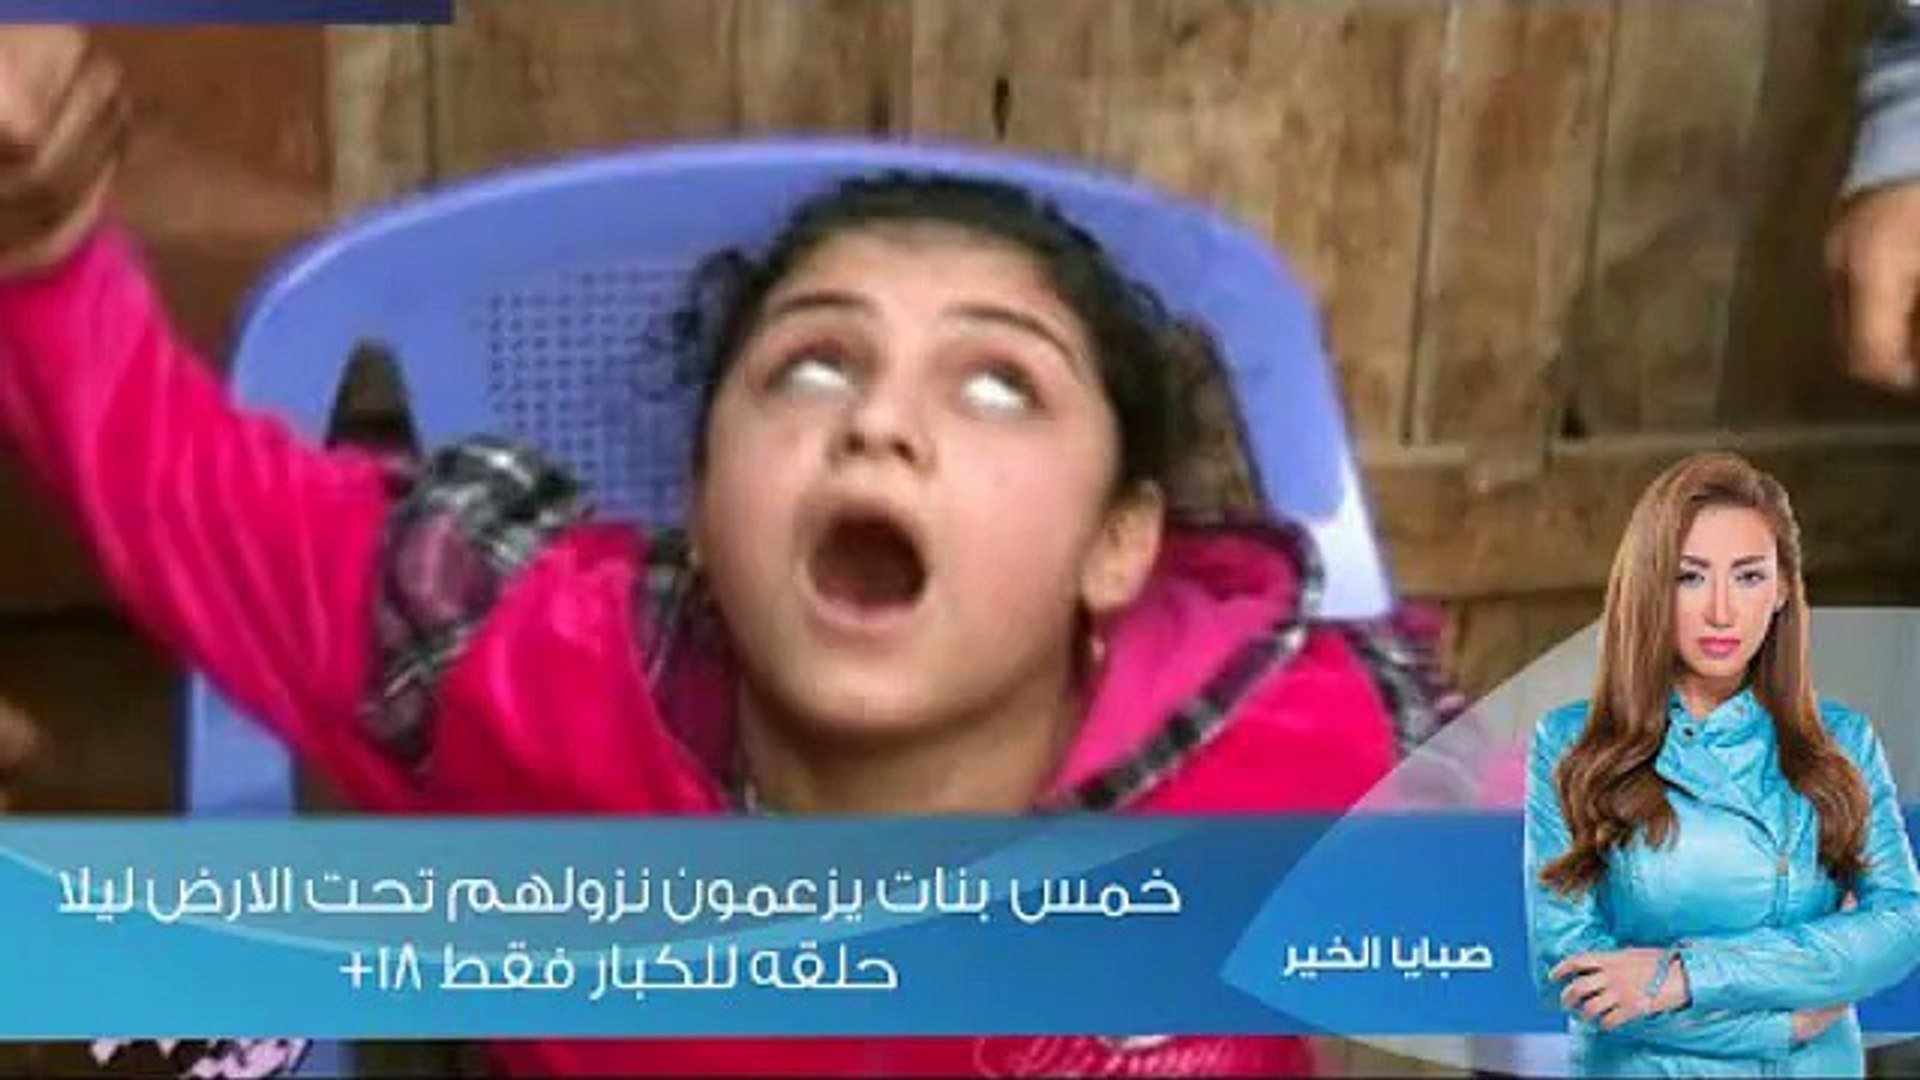 مشاهدة حلقة ريهام سعيد امبارح عن الجن (2) - video Dailymotion